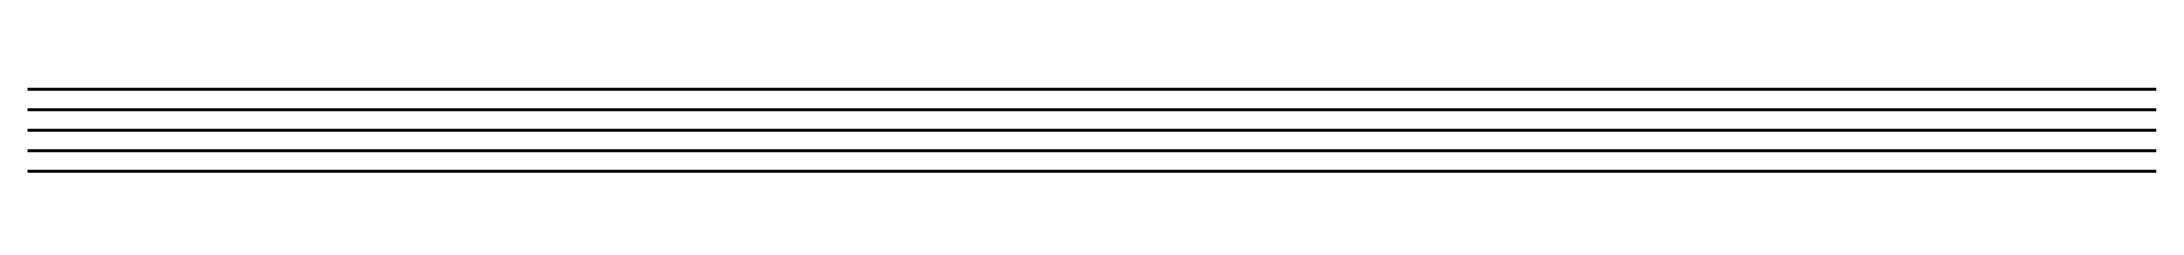 Нотная бумага с проставленными скрипичными ключами